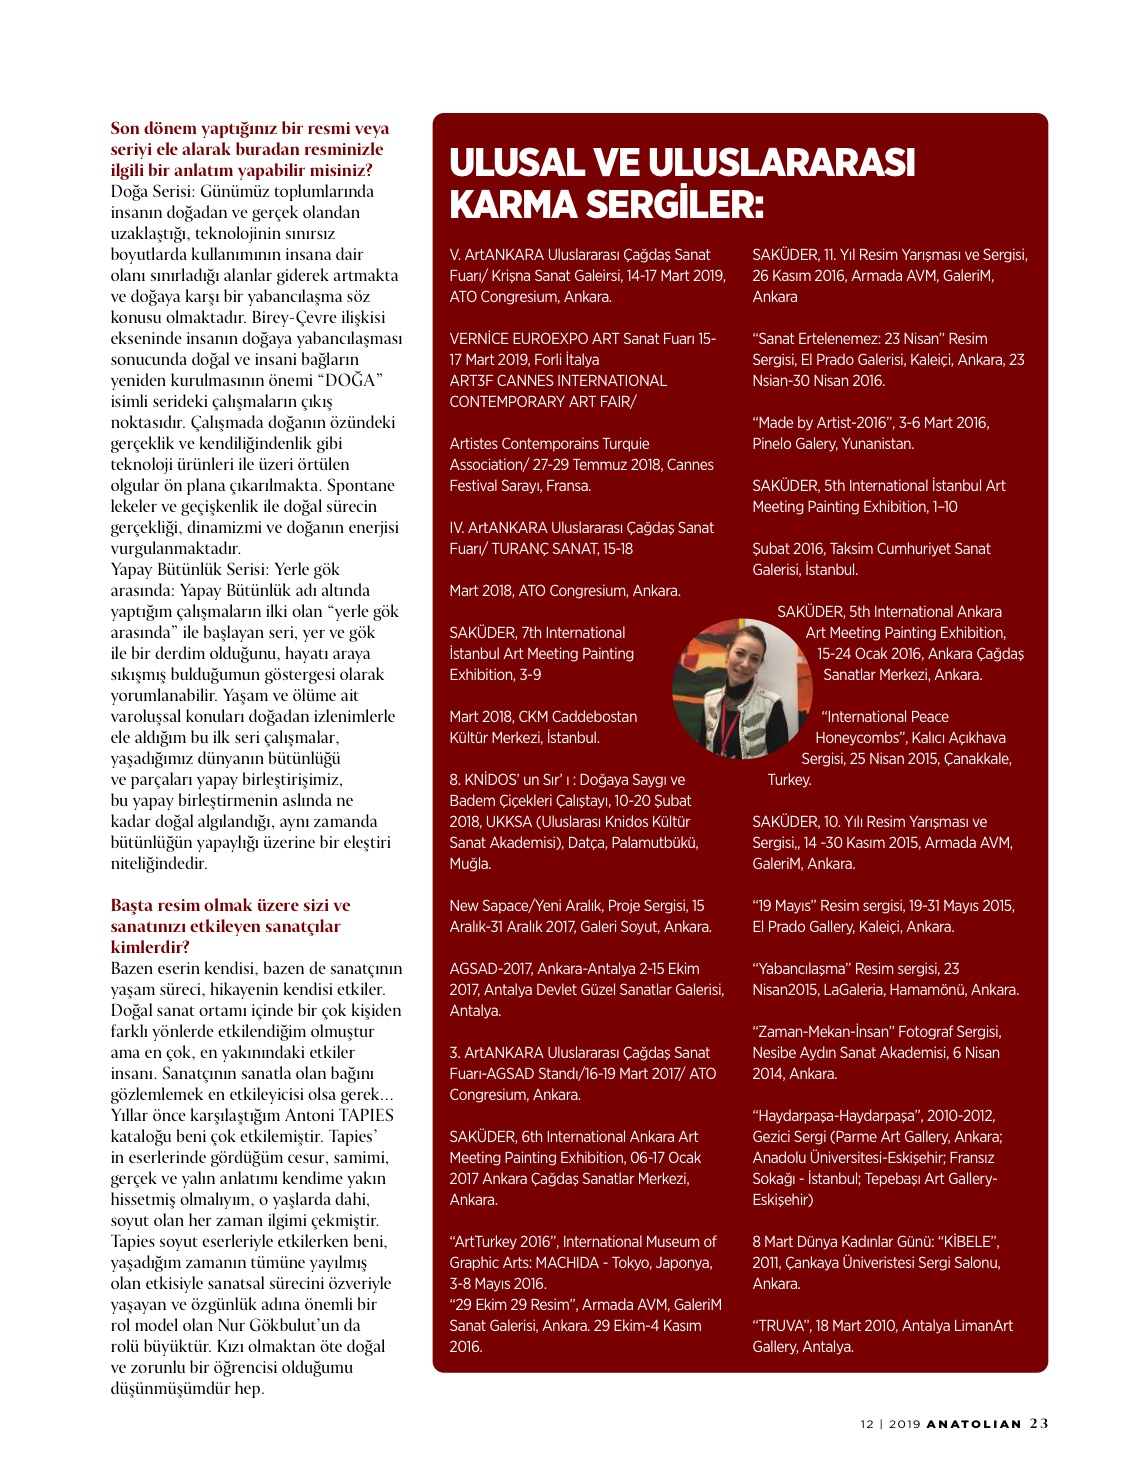 Özge Gökbulut Özdemir, Anatolian Dergisi, Aralık 2019